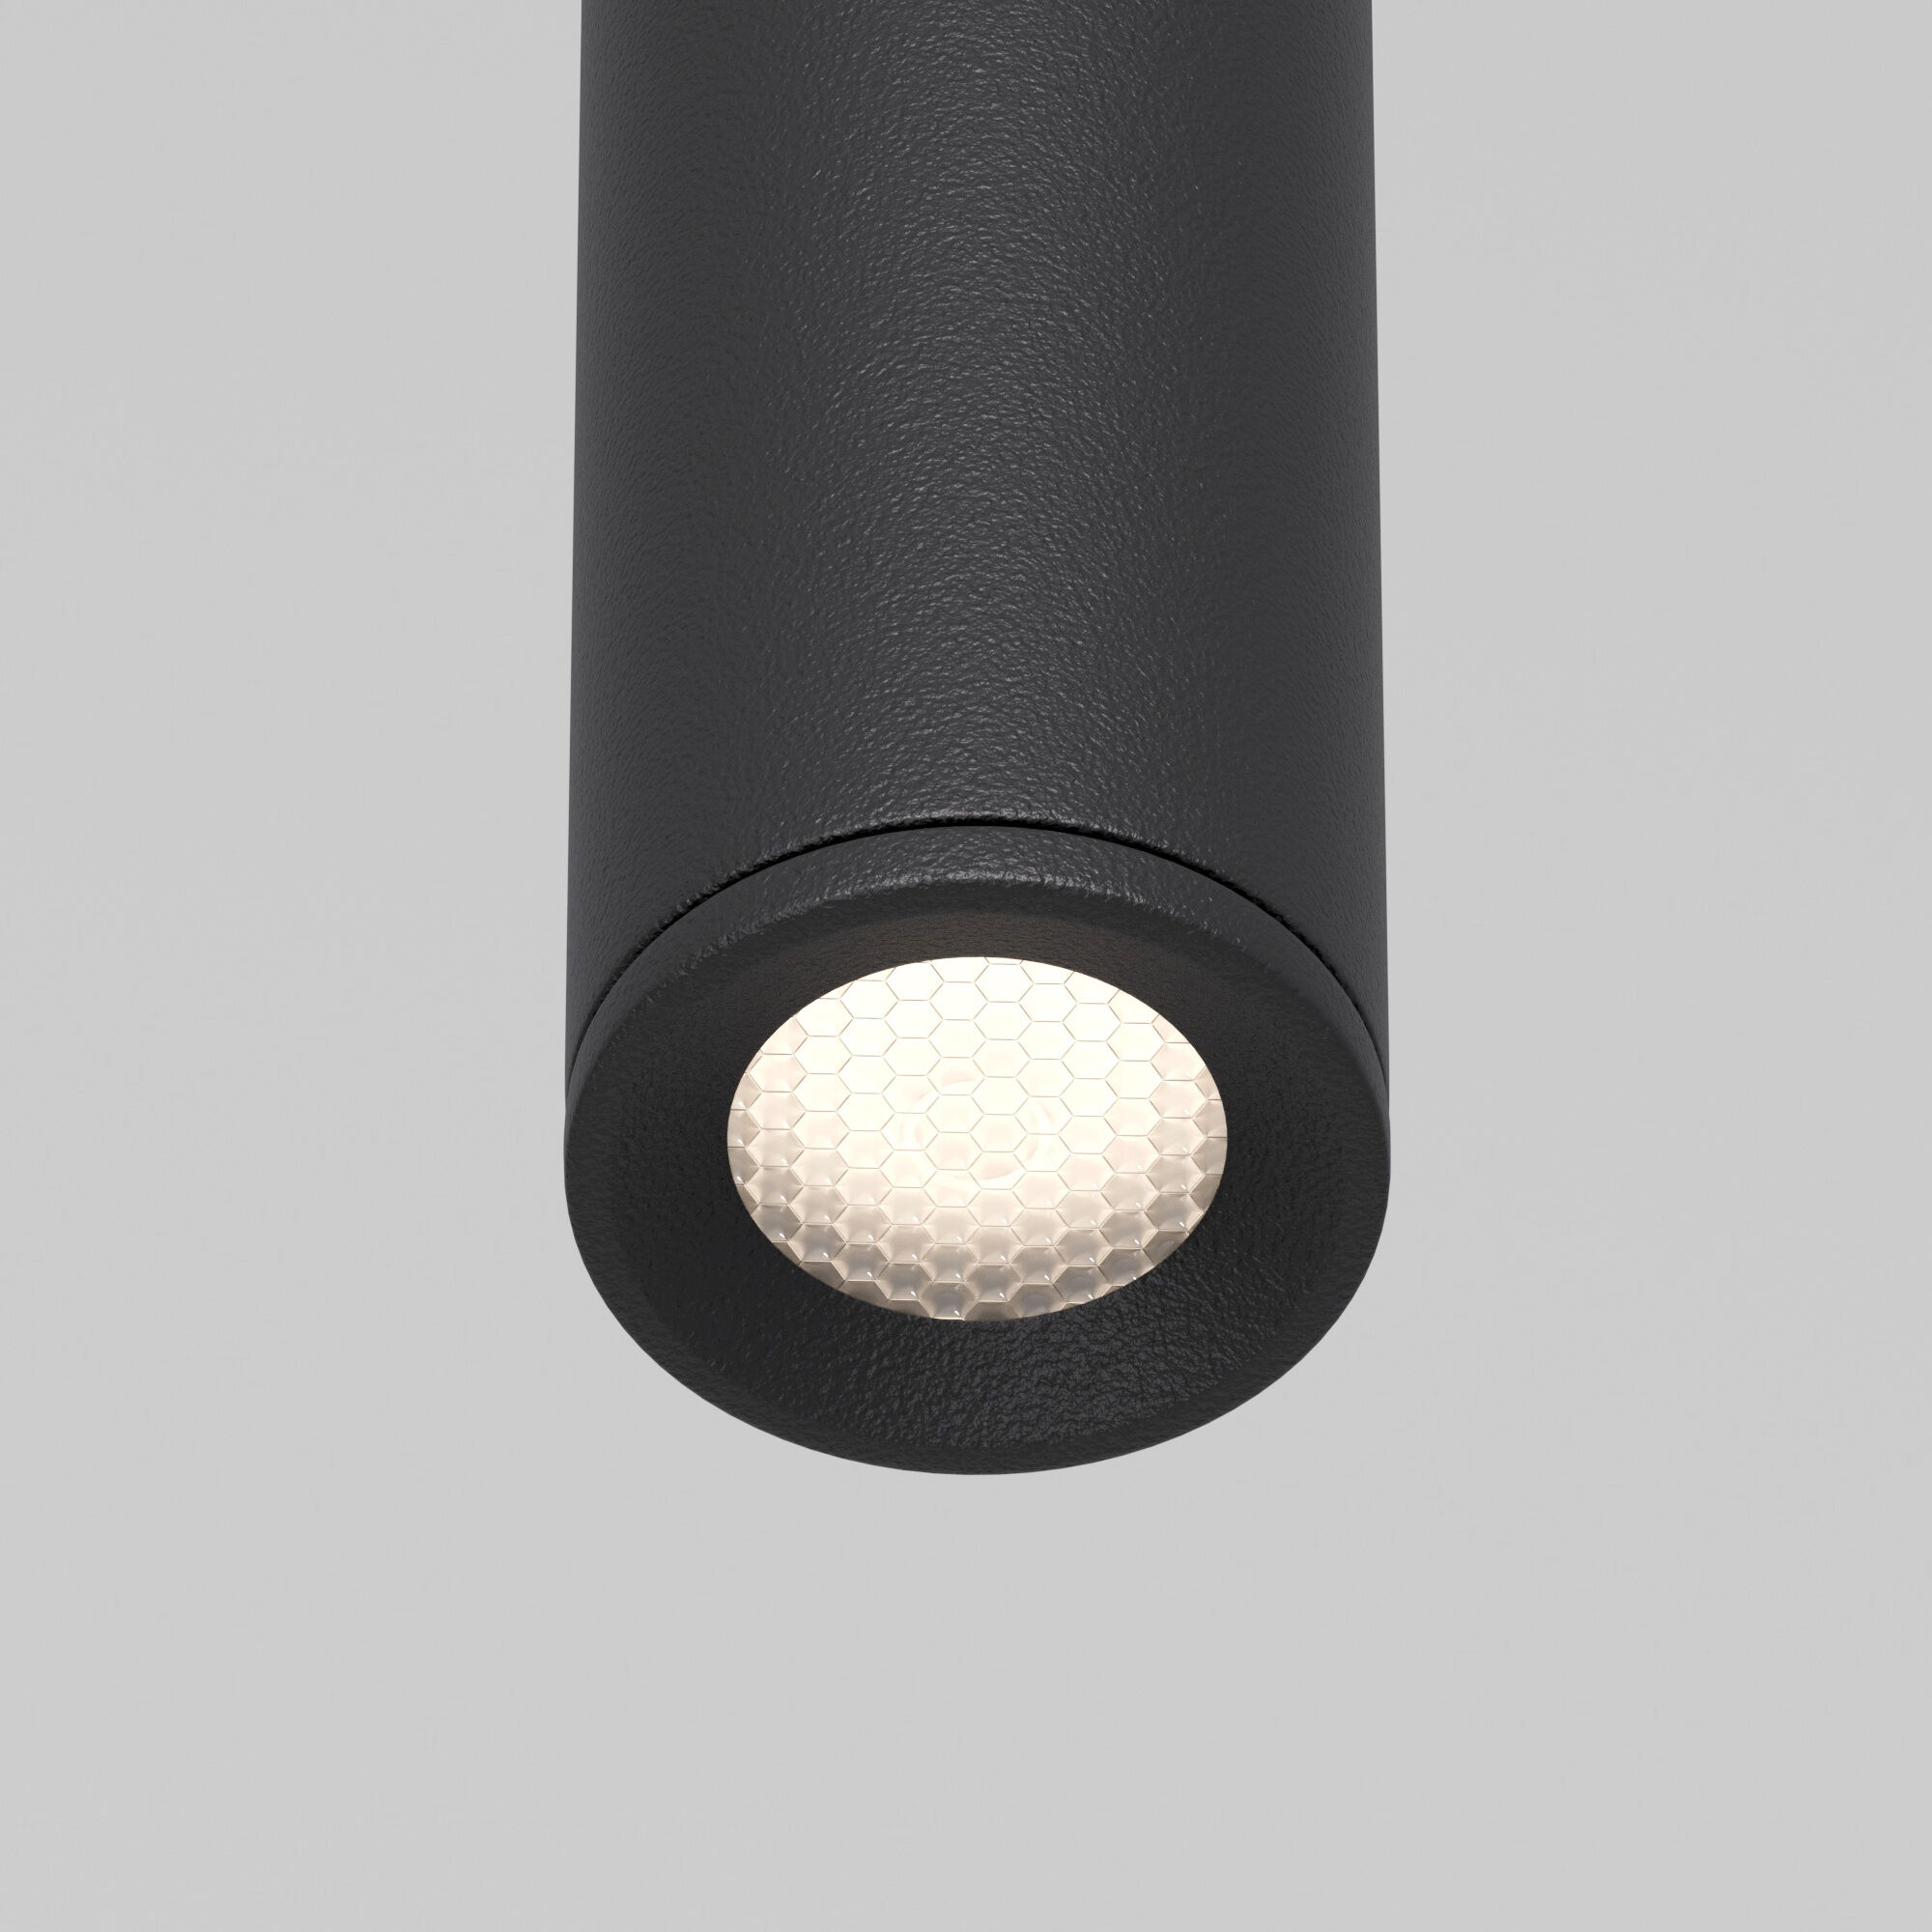 Подвесной светодиодный светильник Flinn 4W 4000К черный 50263 LED